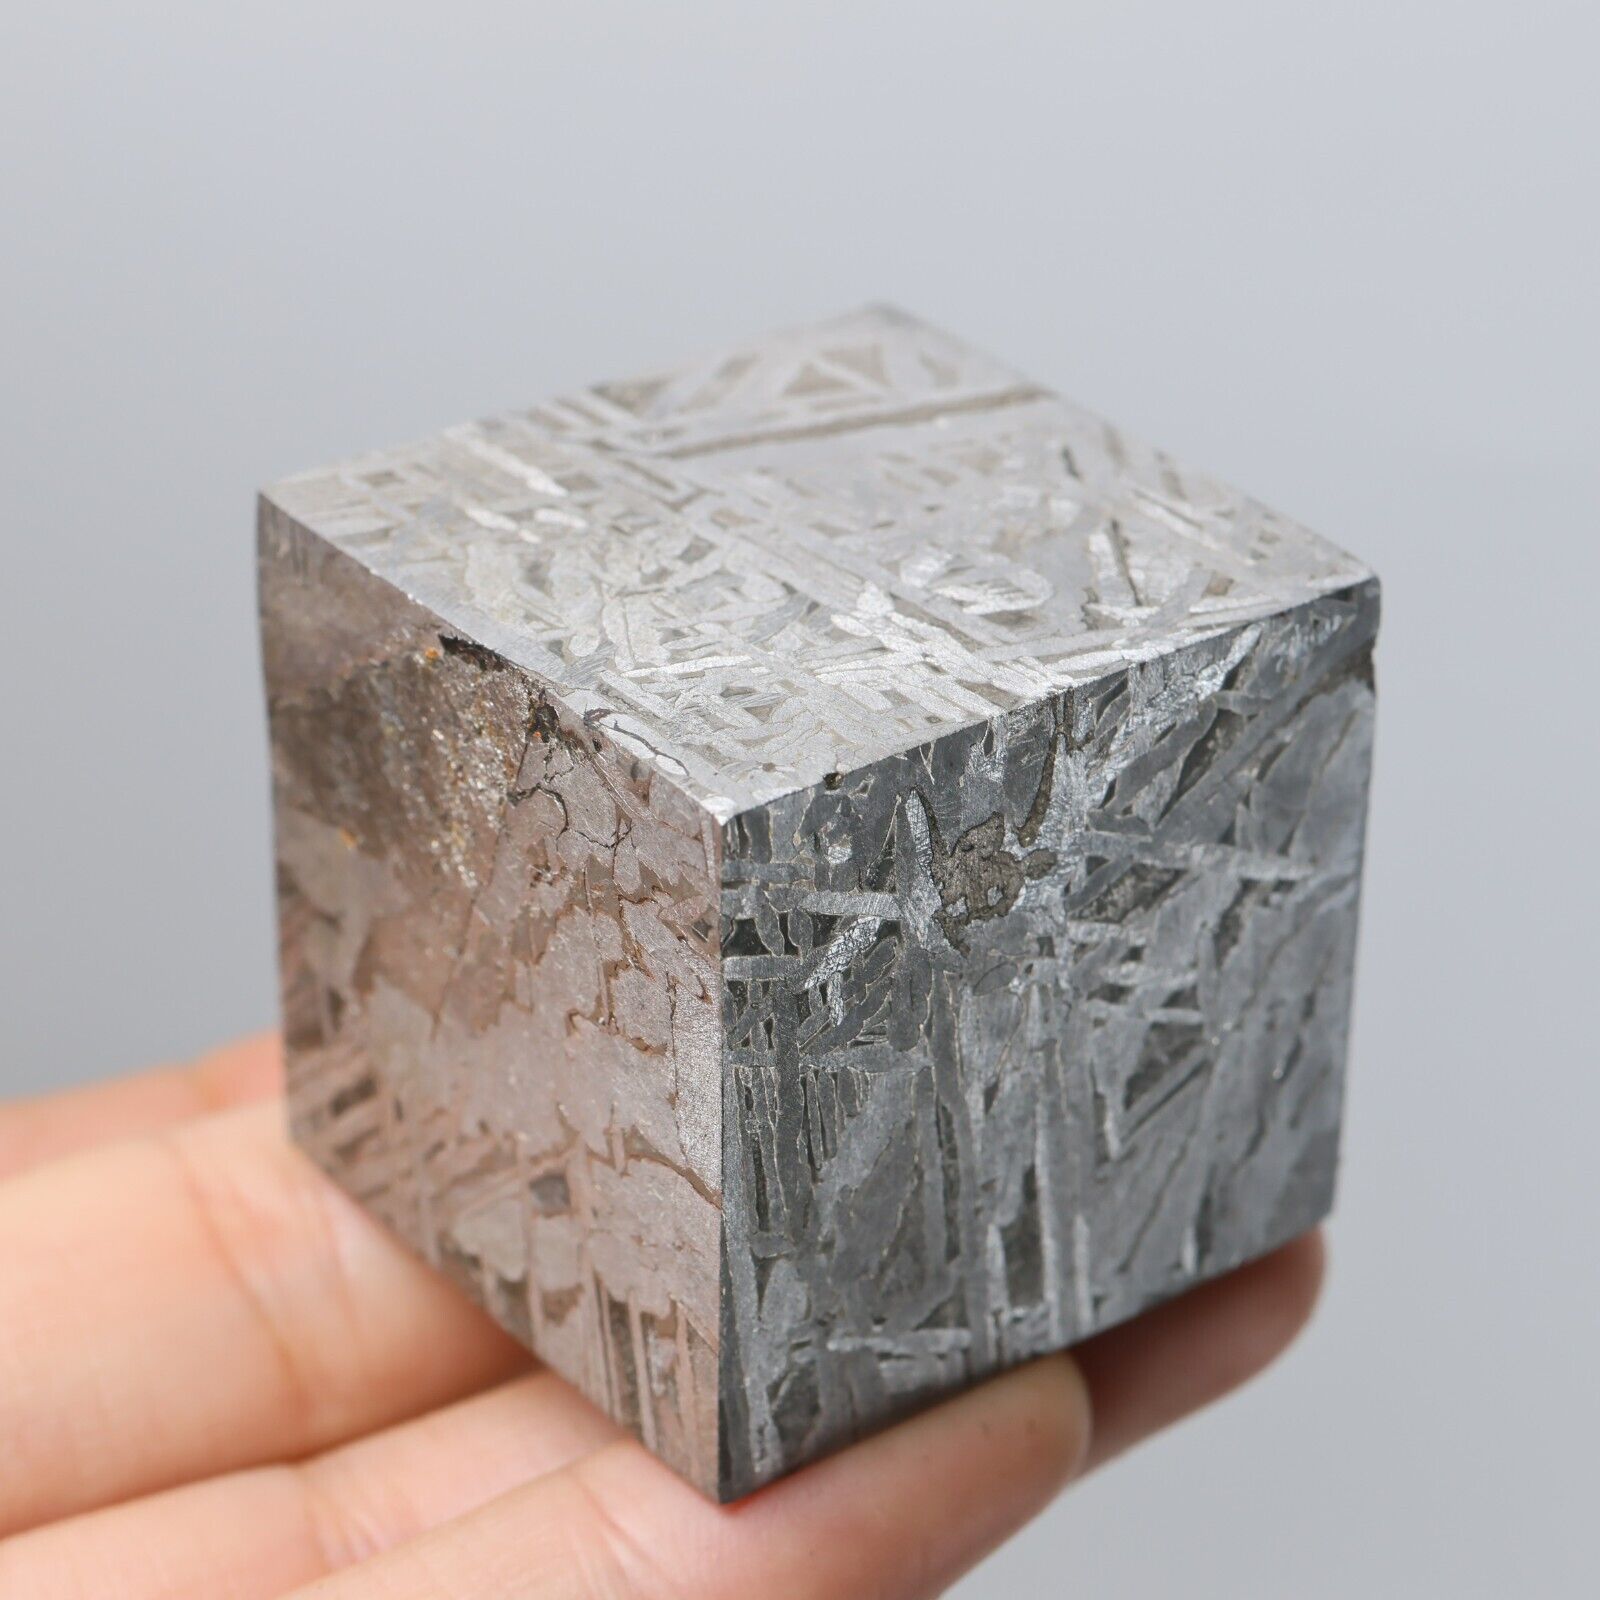 269g Muonionalusta meteorite cube R1910